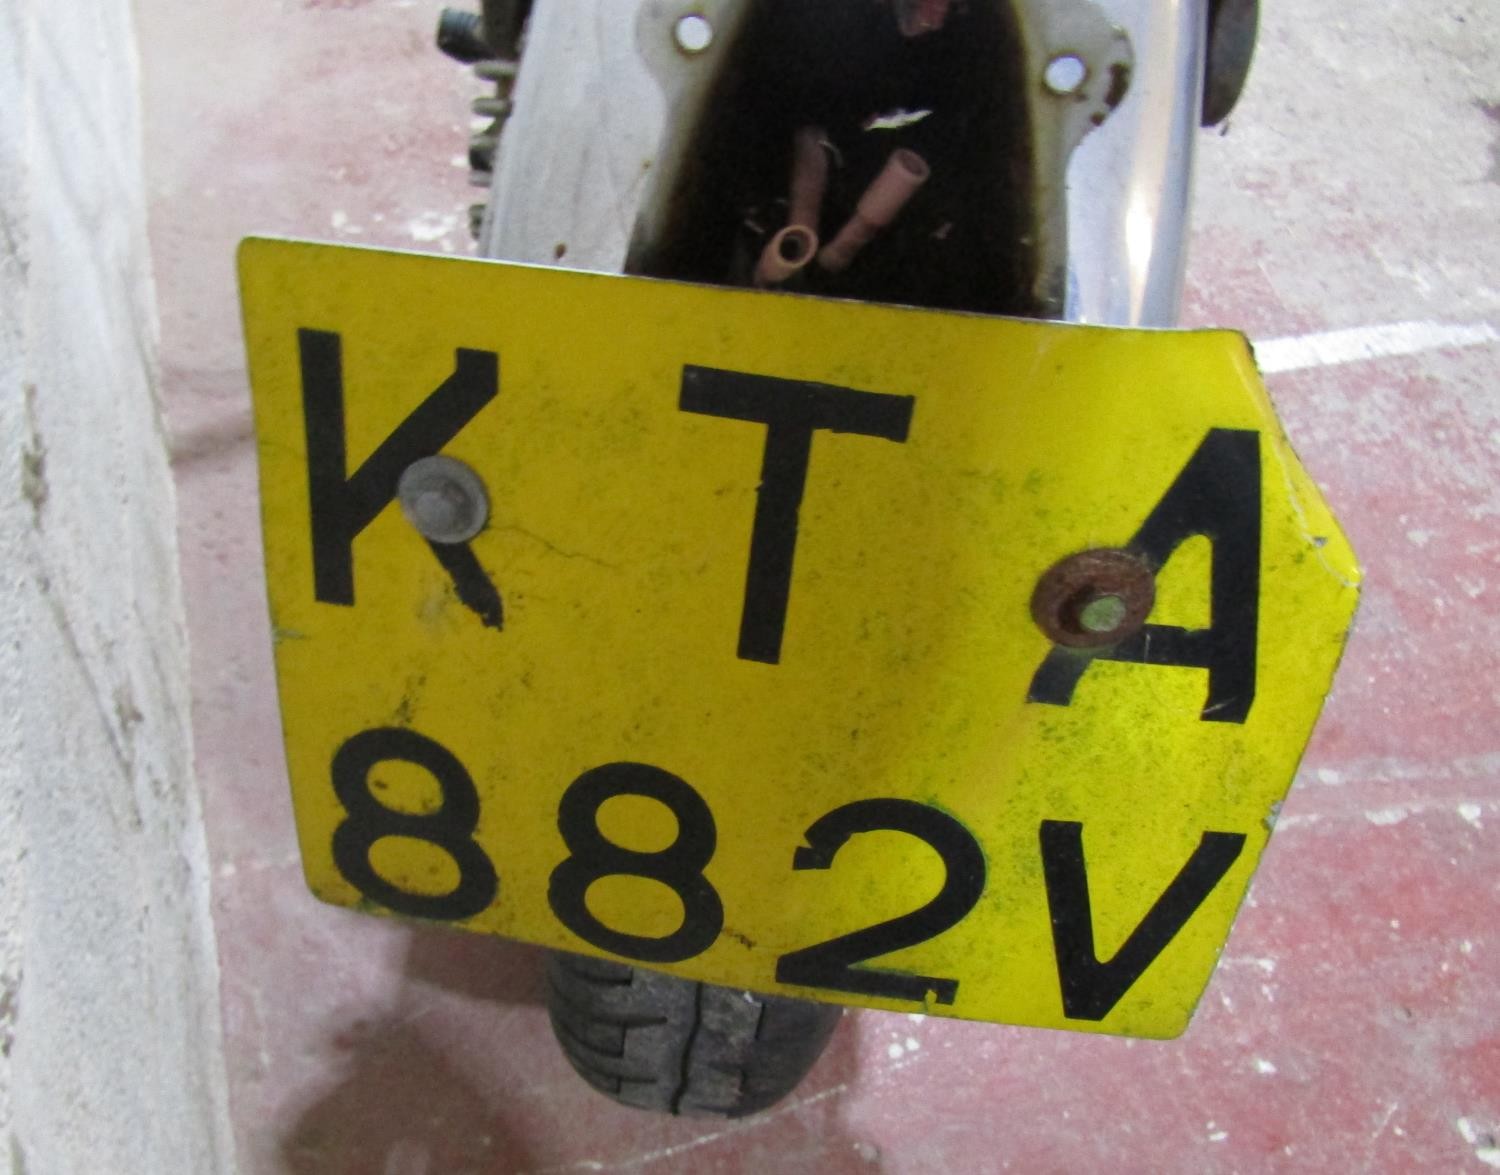 A Suzuki motorcycle, registration number KTA 882v (no V5C logbook) Sold without reserve. Not - Image 3 of 5